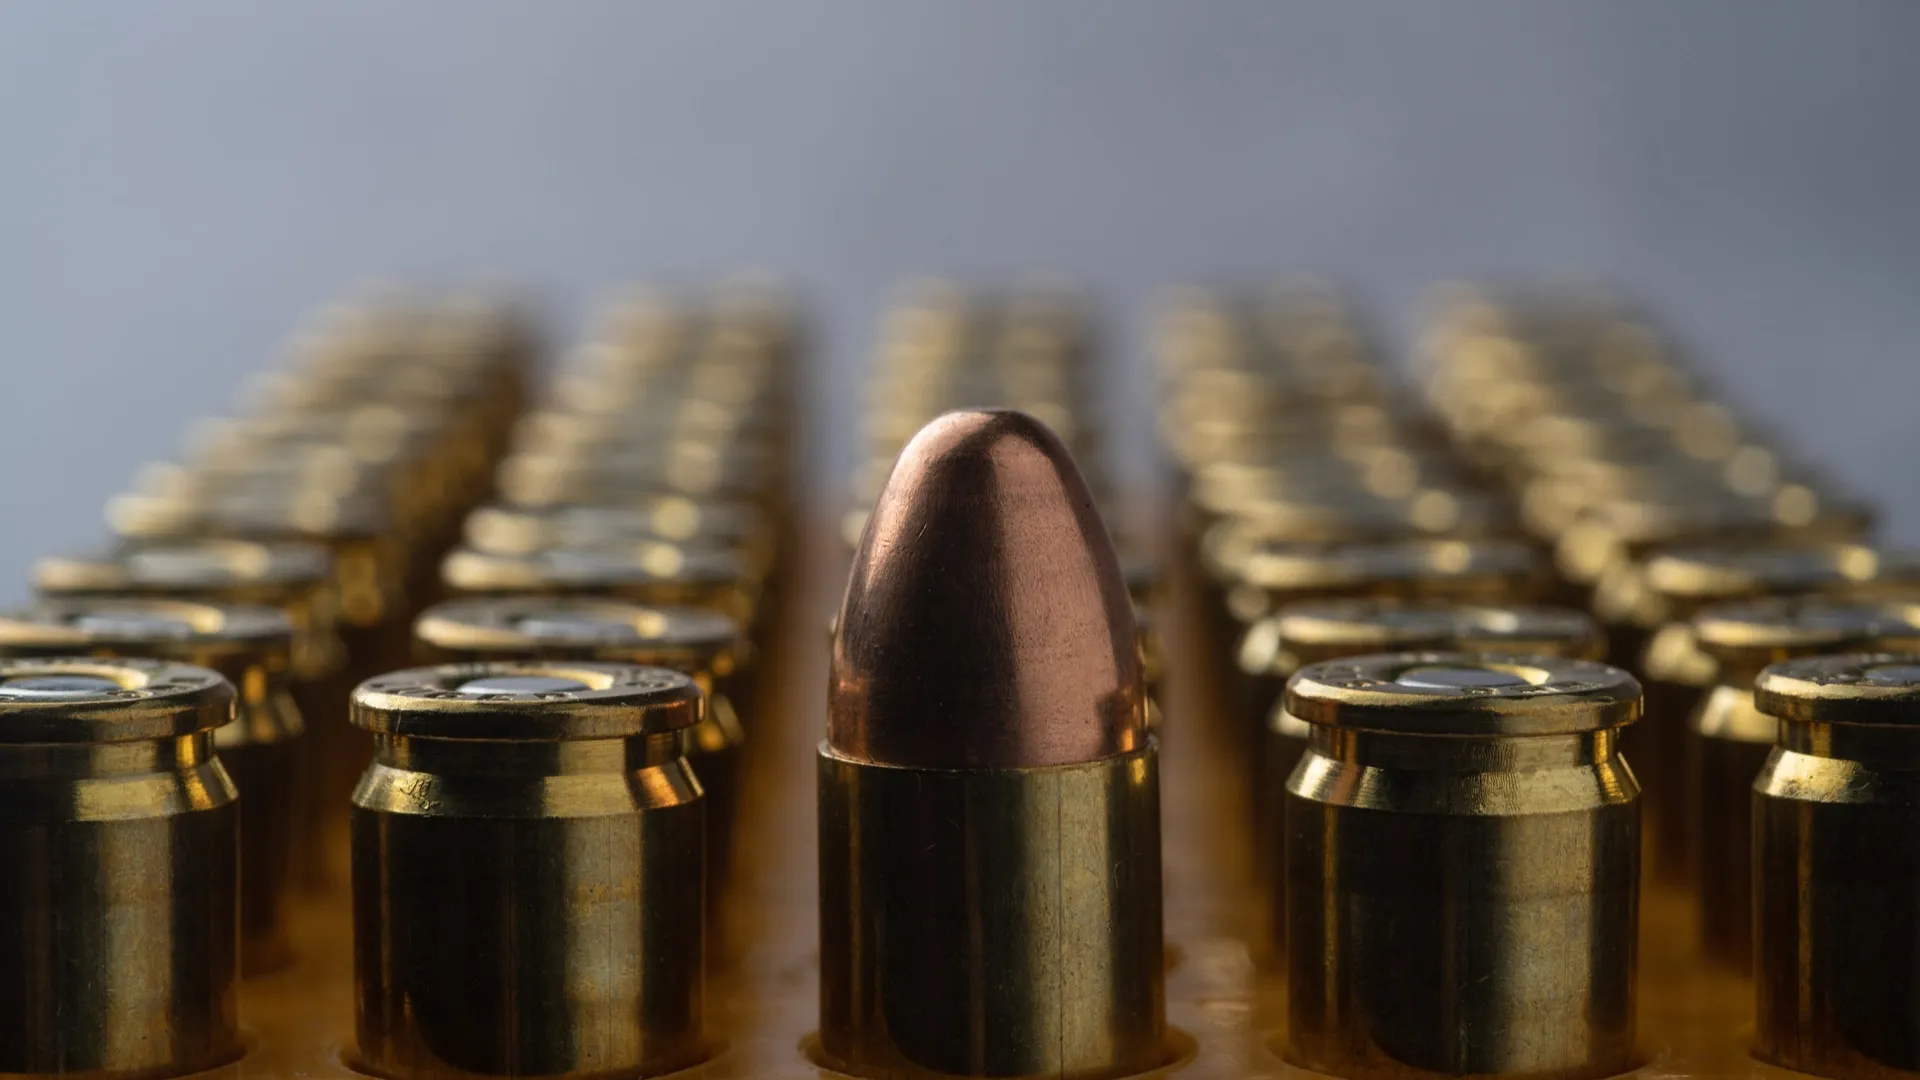 За нарушение правил хранения боеприпасов придется отвечать по закону. Фото: PisutKP / Shutterstock.com